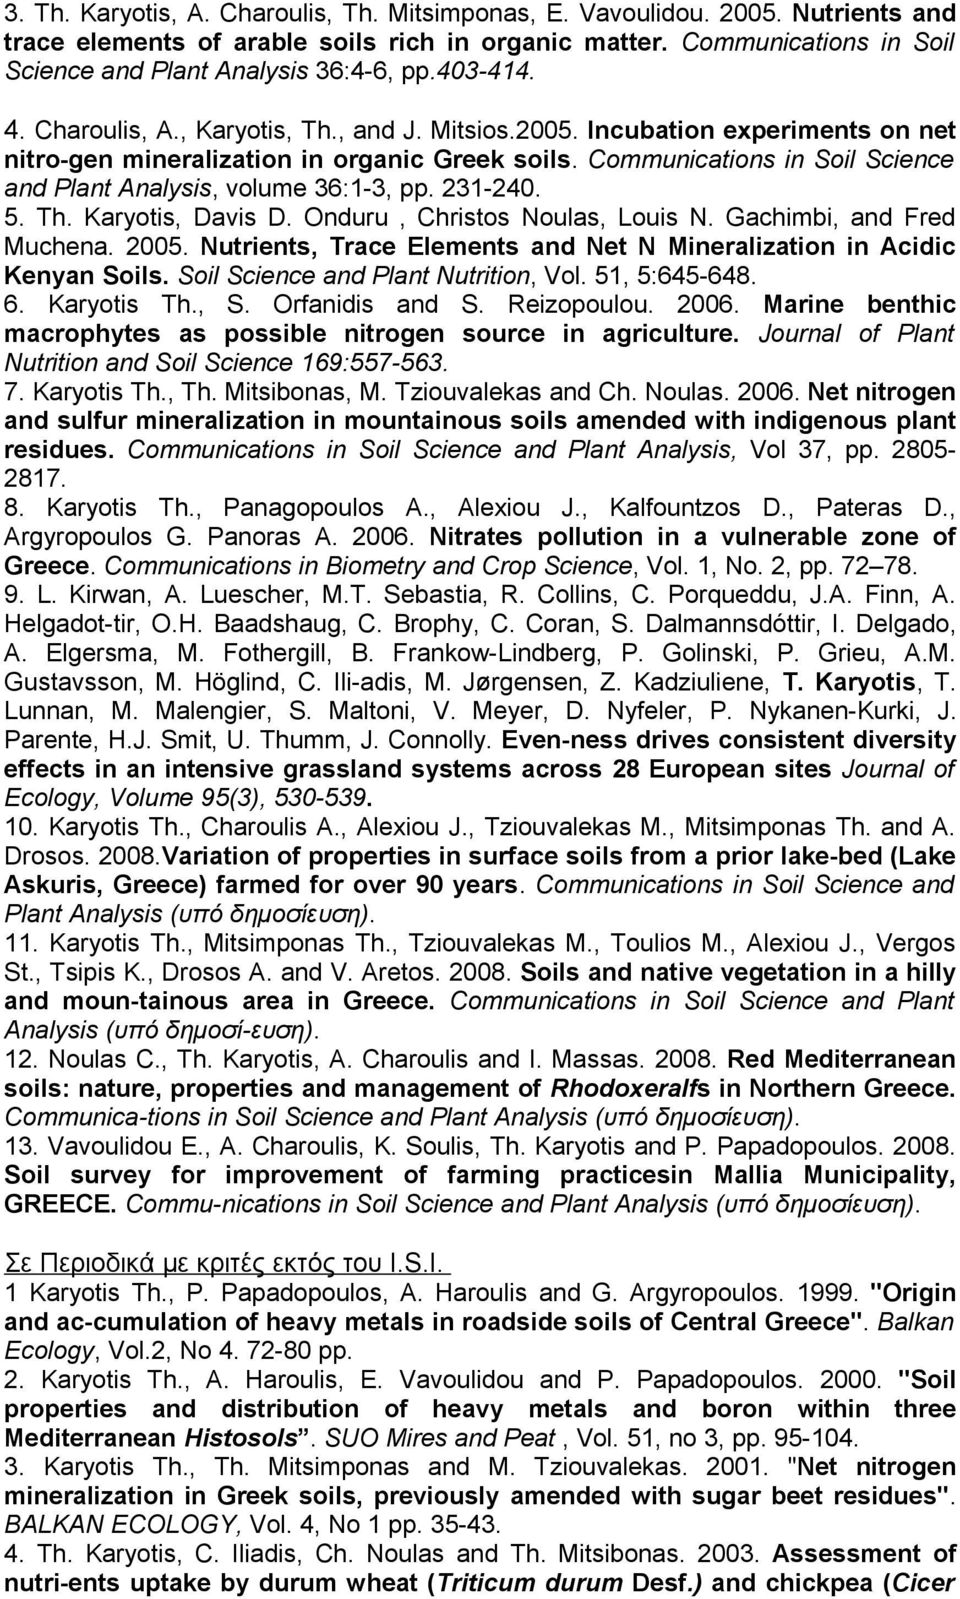 Communications in Soil Science and Plant Analysis, volume 36:1-3, pp. 231-240. 5. Th. Karyotis, Davis D. Onduru, Christos Noulas, Louis N. Gachimbi, and Fred Muchena. 2005.